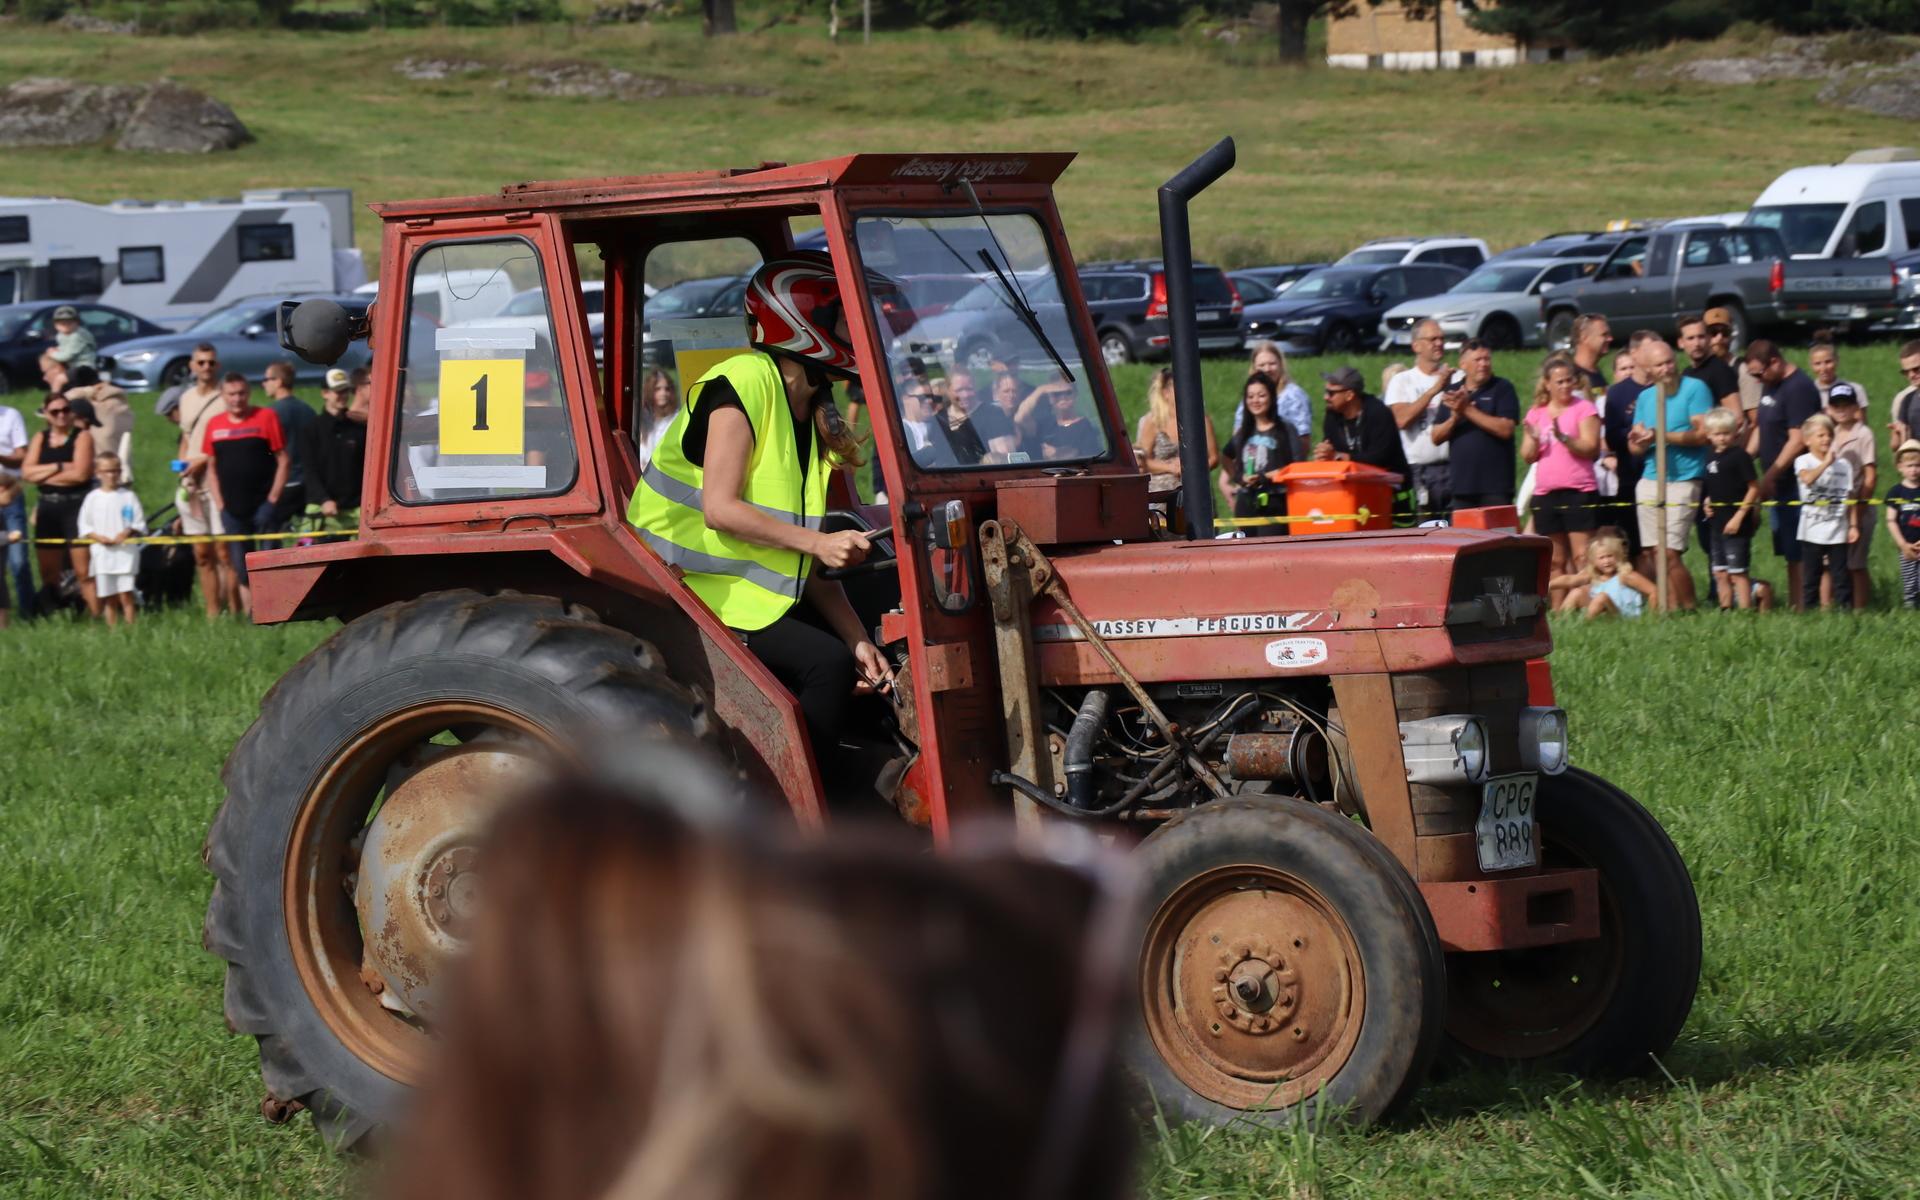 Tolv traktorekipage deltog i Guddeby under lördagen.